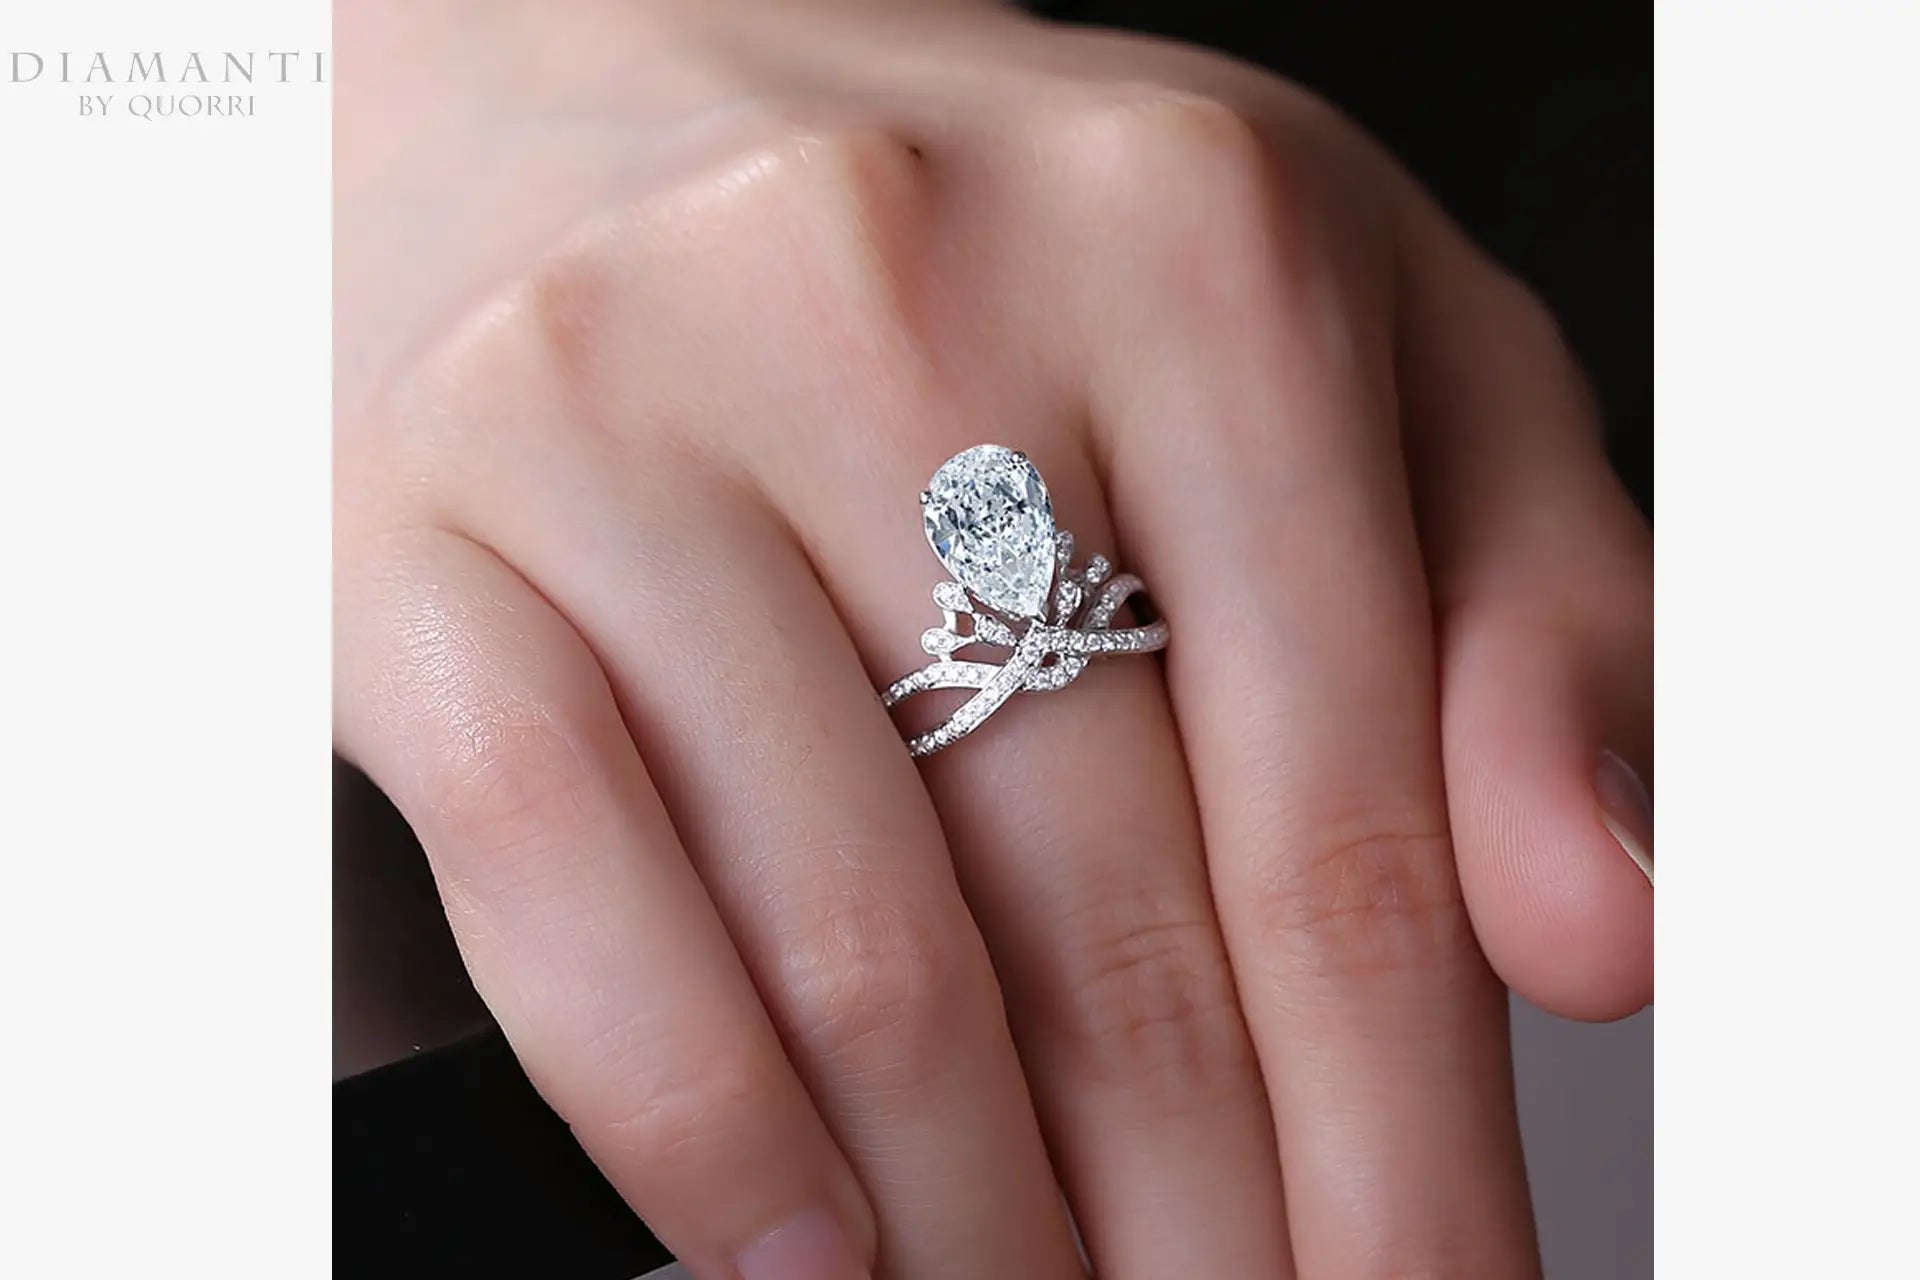 designer antique tiara 3ct pear cut lab diamond engagement ring Quorri Canada